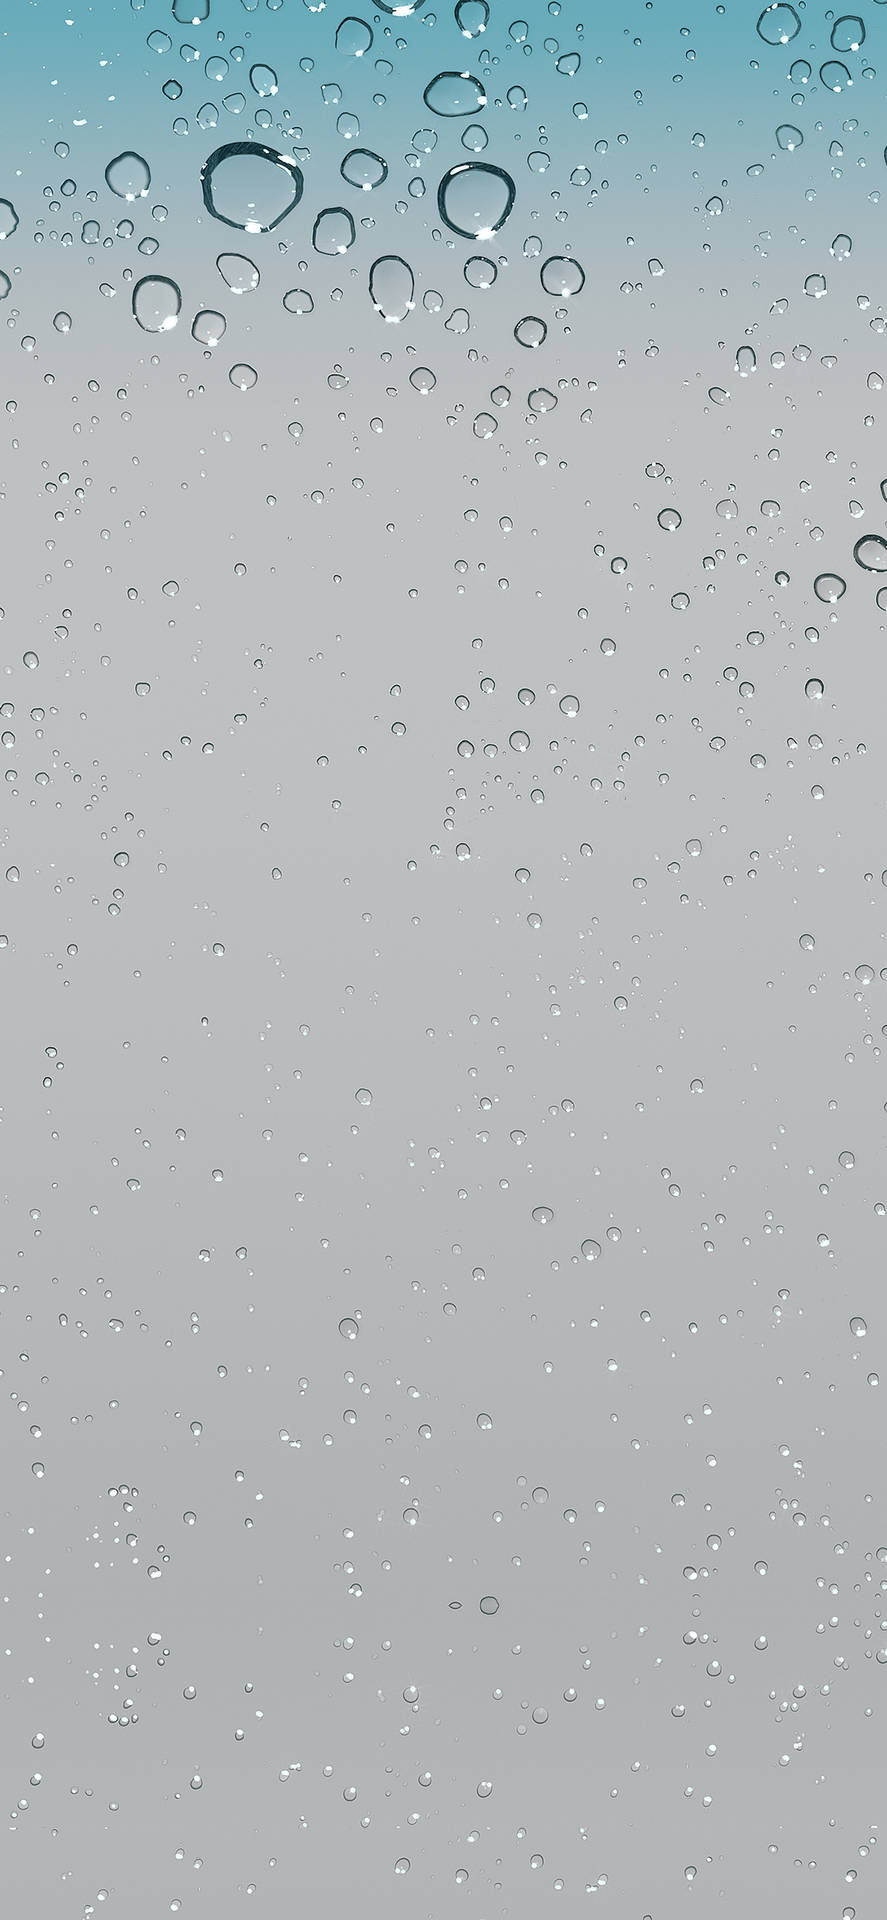 Raindrops iOS 6 Wallpaper